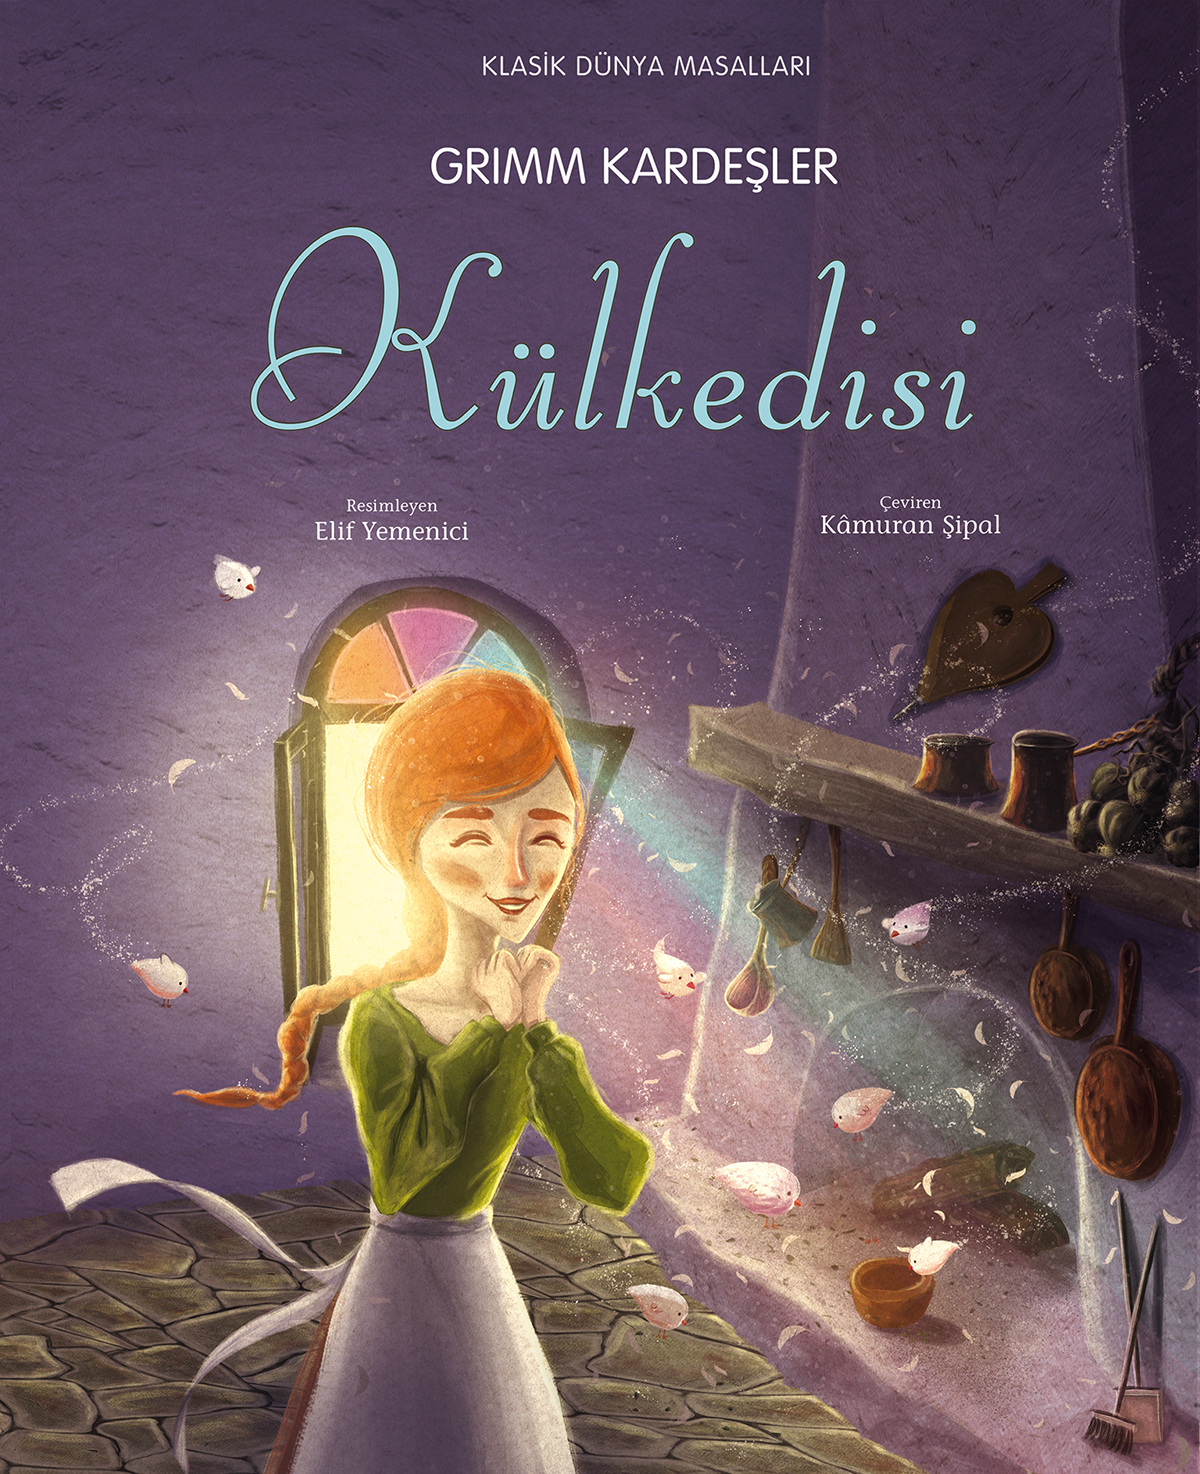 cindirella bird girl shoe childrensbook Kidsbook picturebook fairytale